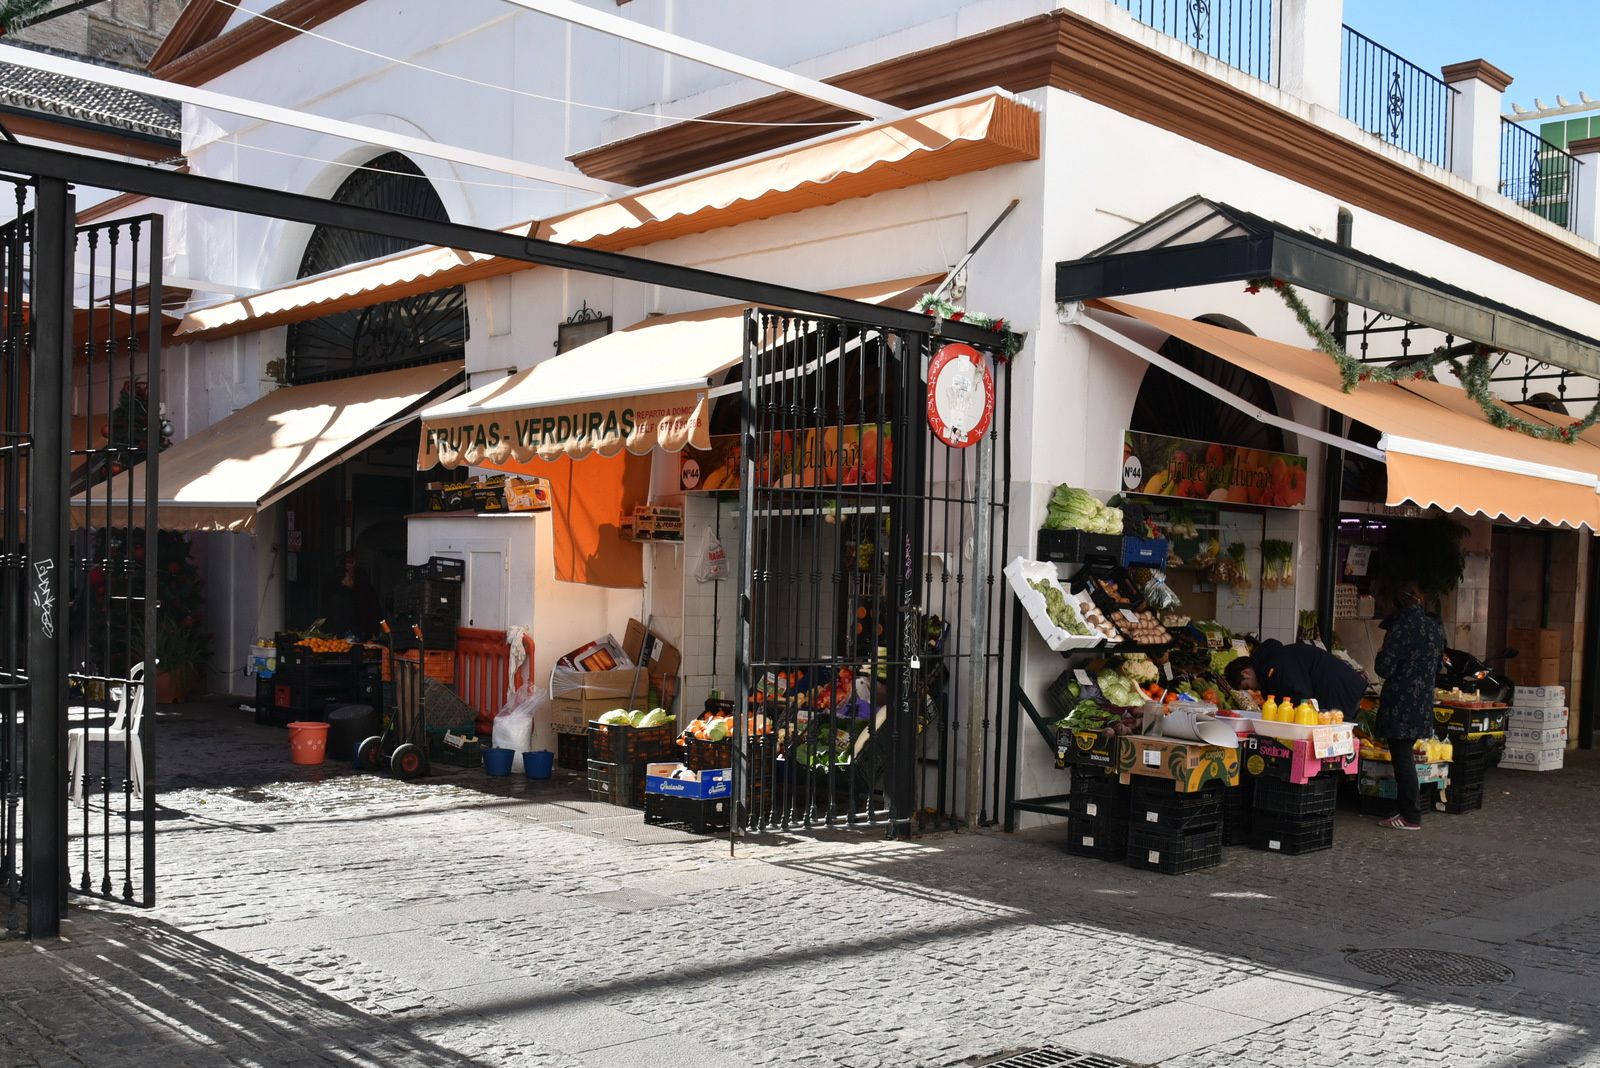 I - Mercado de Féria et sa quinzaine d'échoppes carrelées